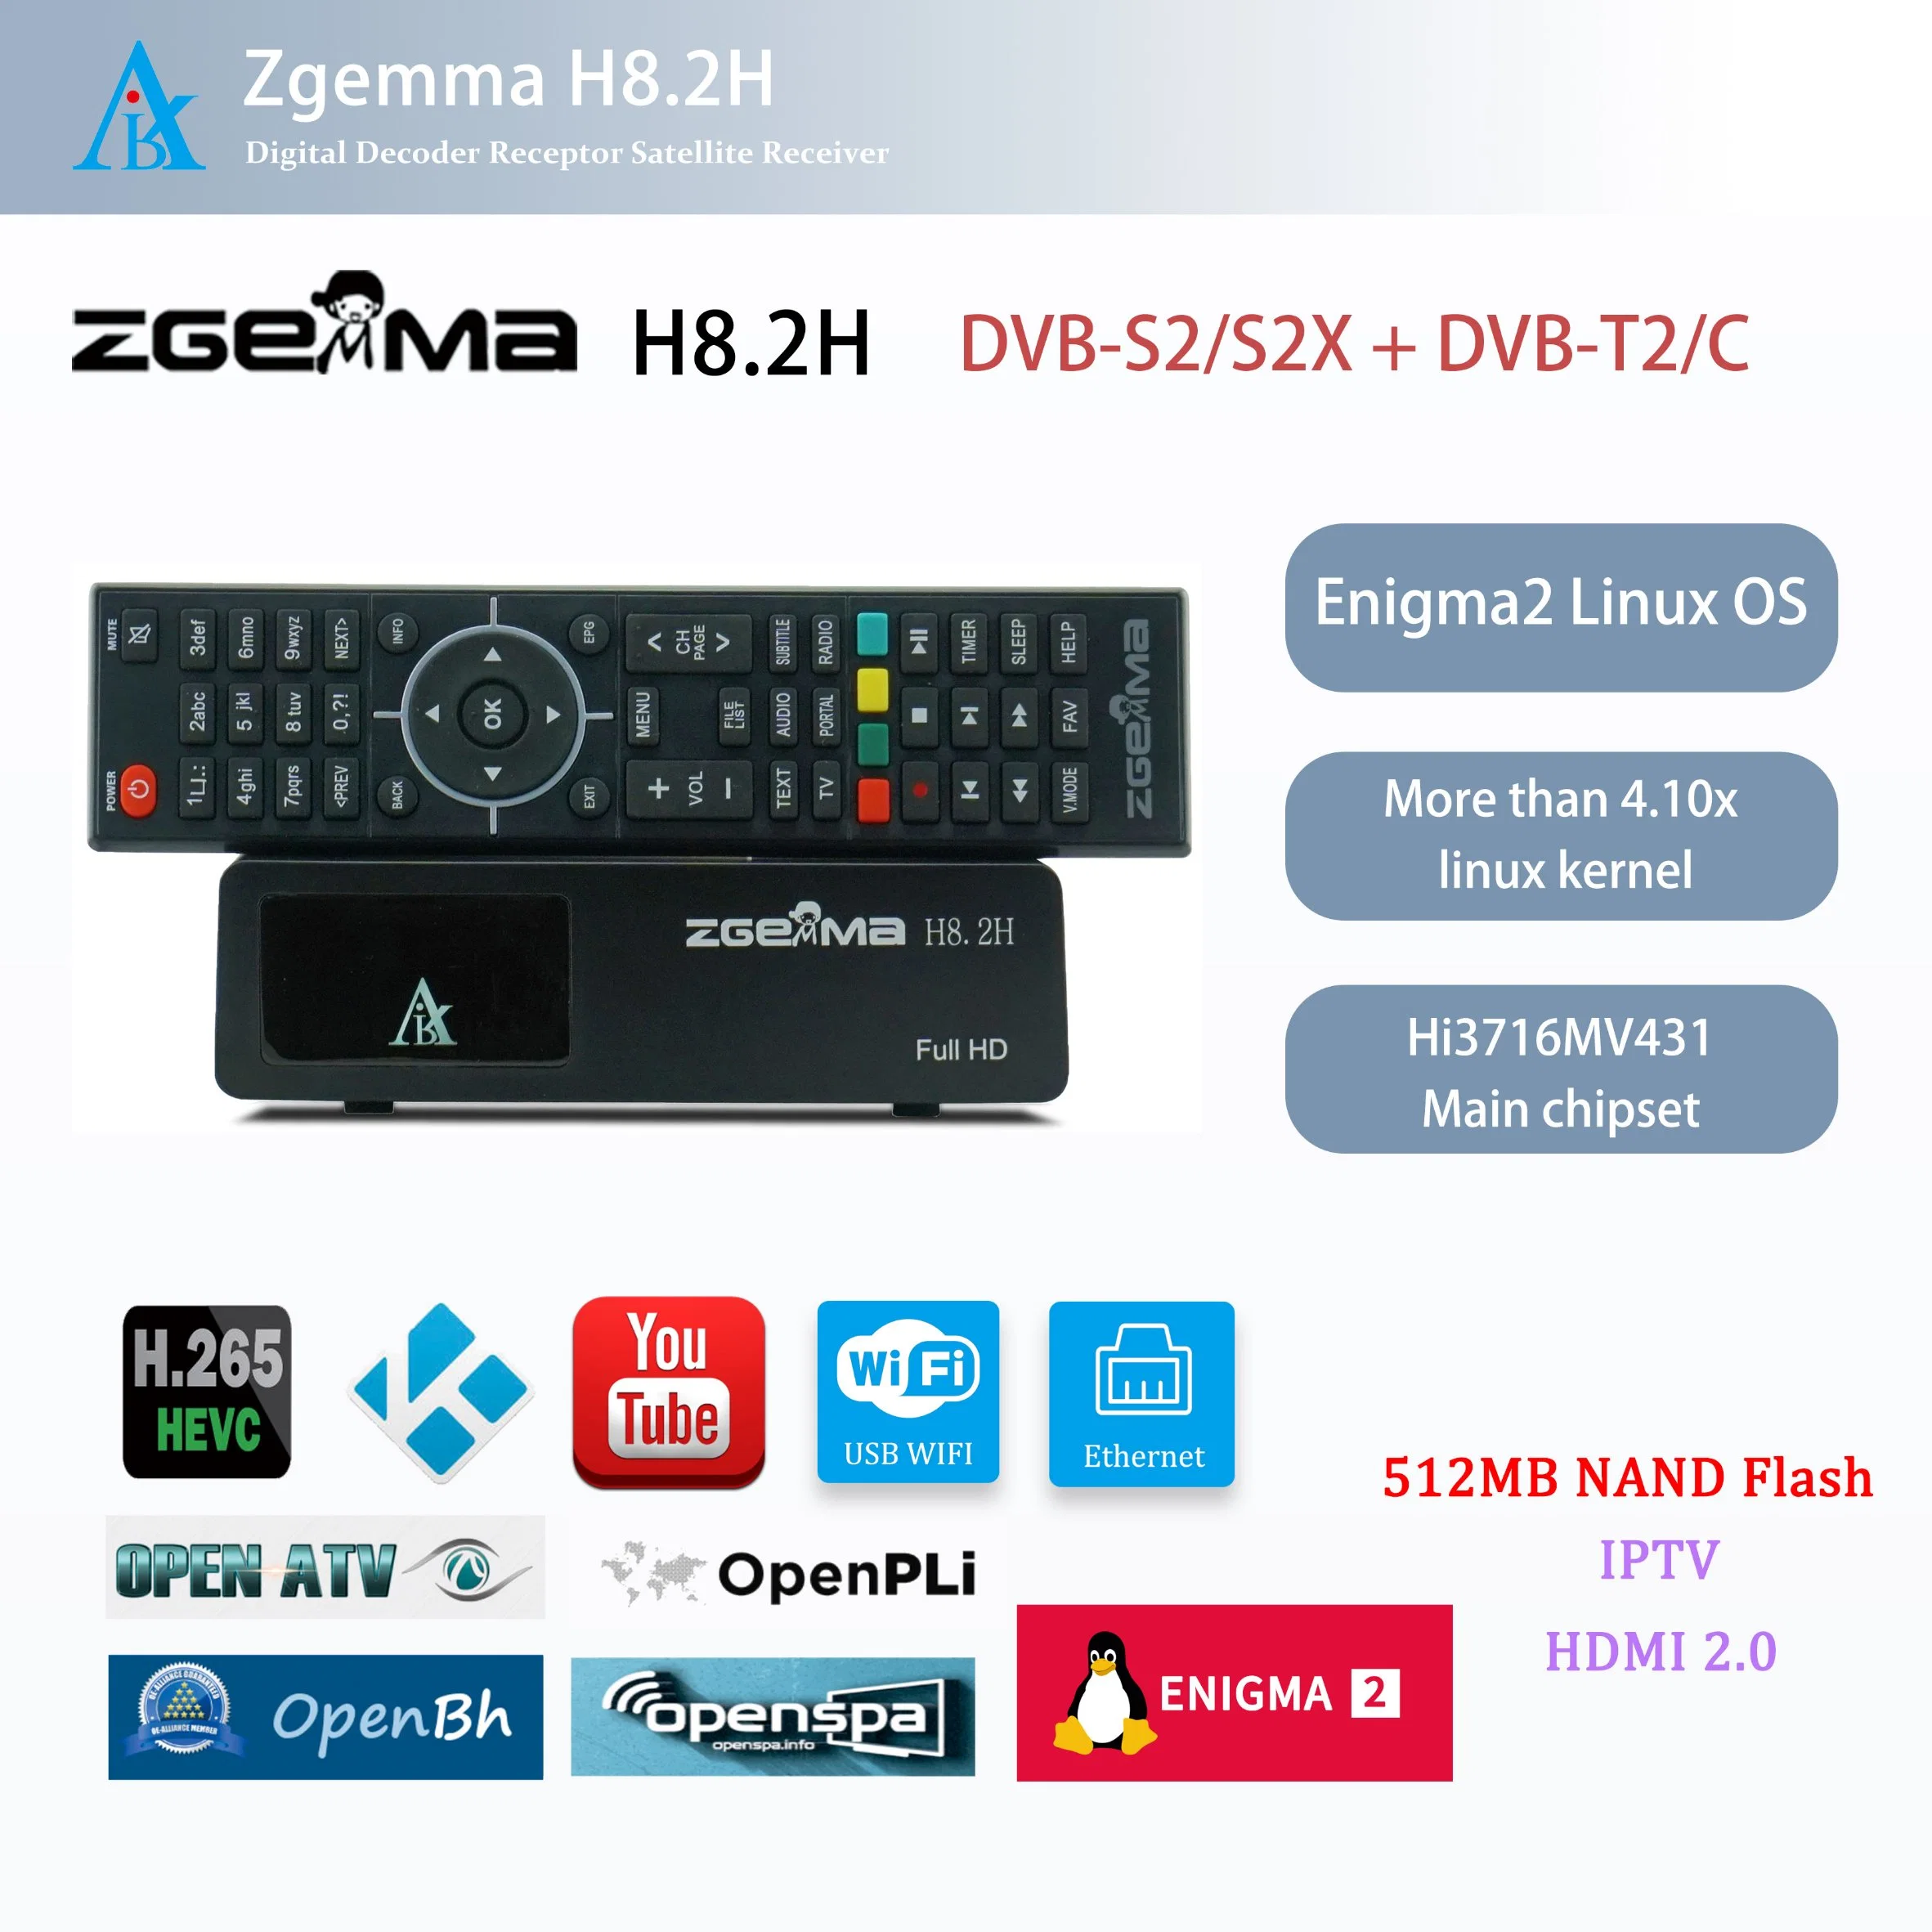 Receptor de TV vía satélite con Zgemma H8,2h - Enigma2 Linux OS, resolución 1080p, y DVB-S2X + DVB-T2/C sintonizador de TV decodificador